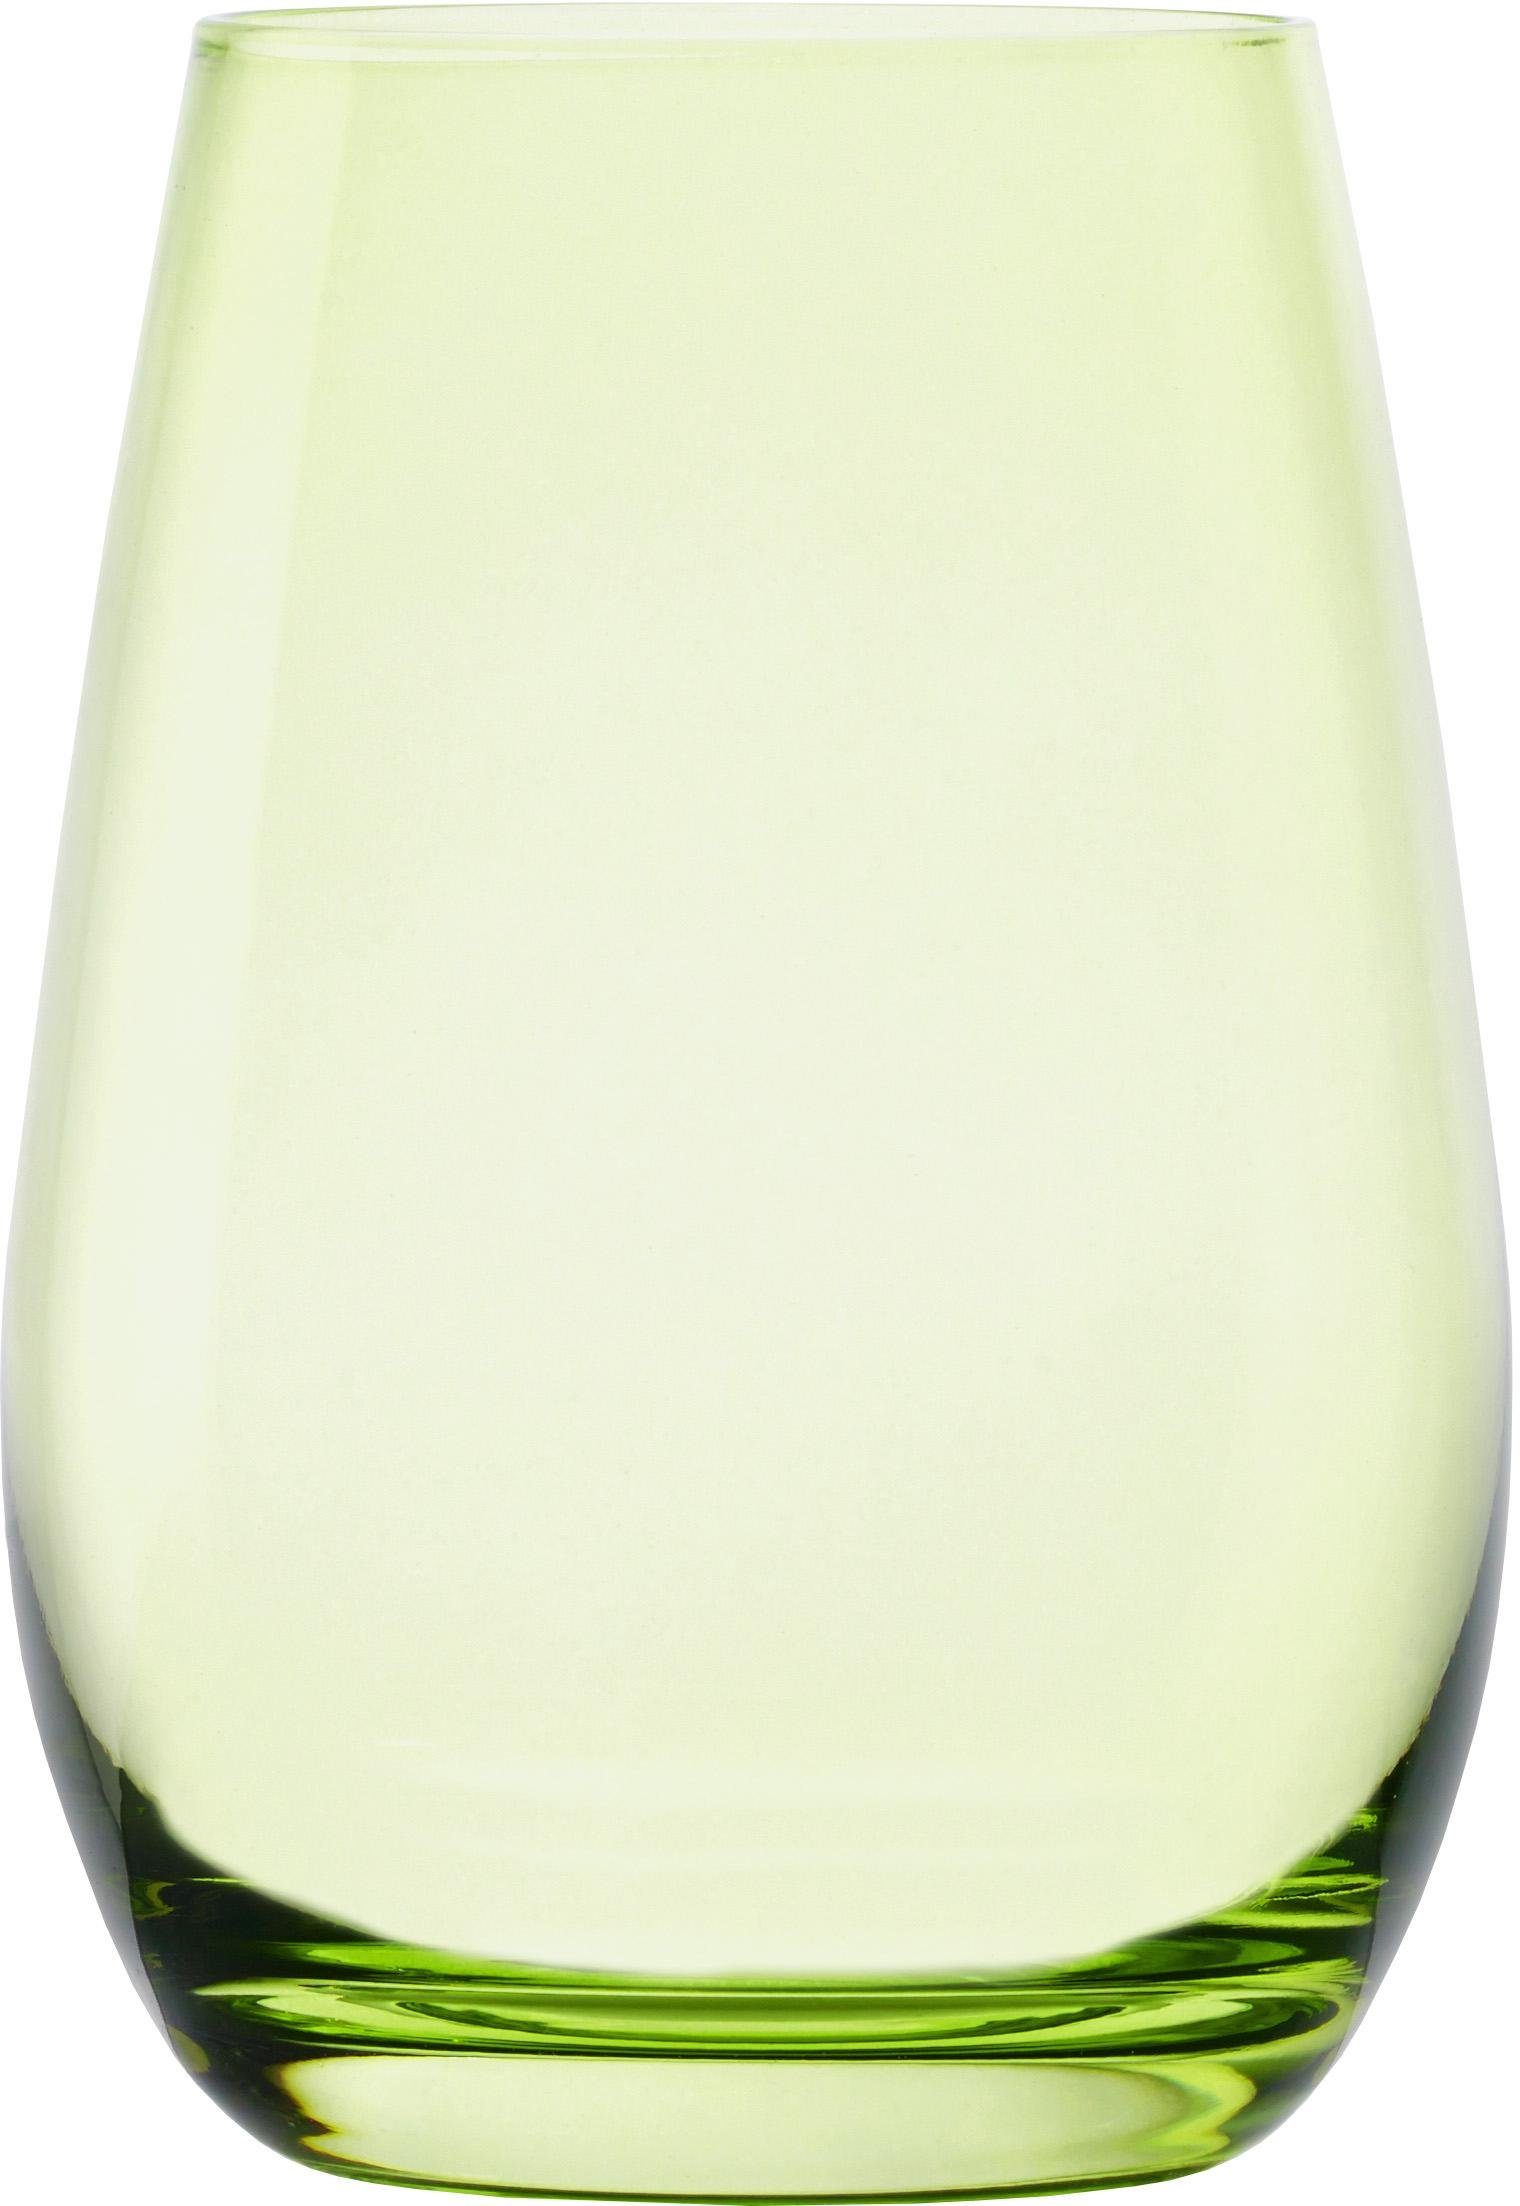 ELEMENTS, Glas, Becher Stölzle grün 6-teilig